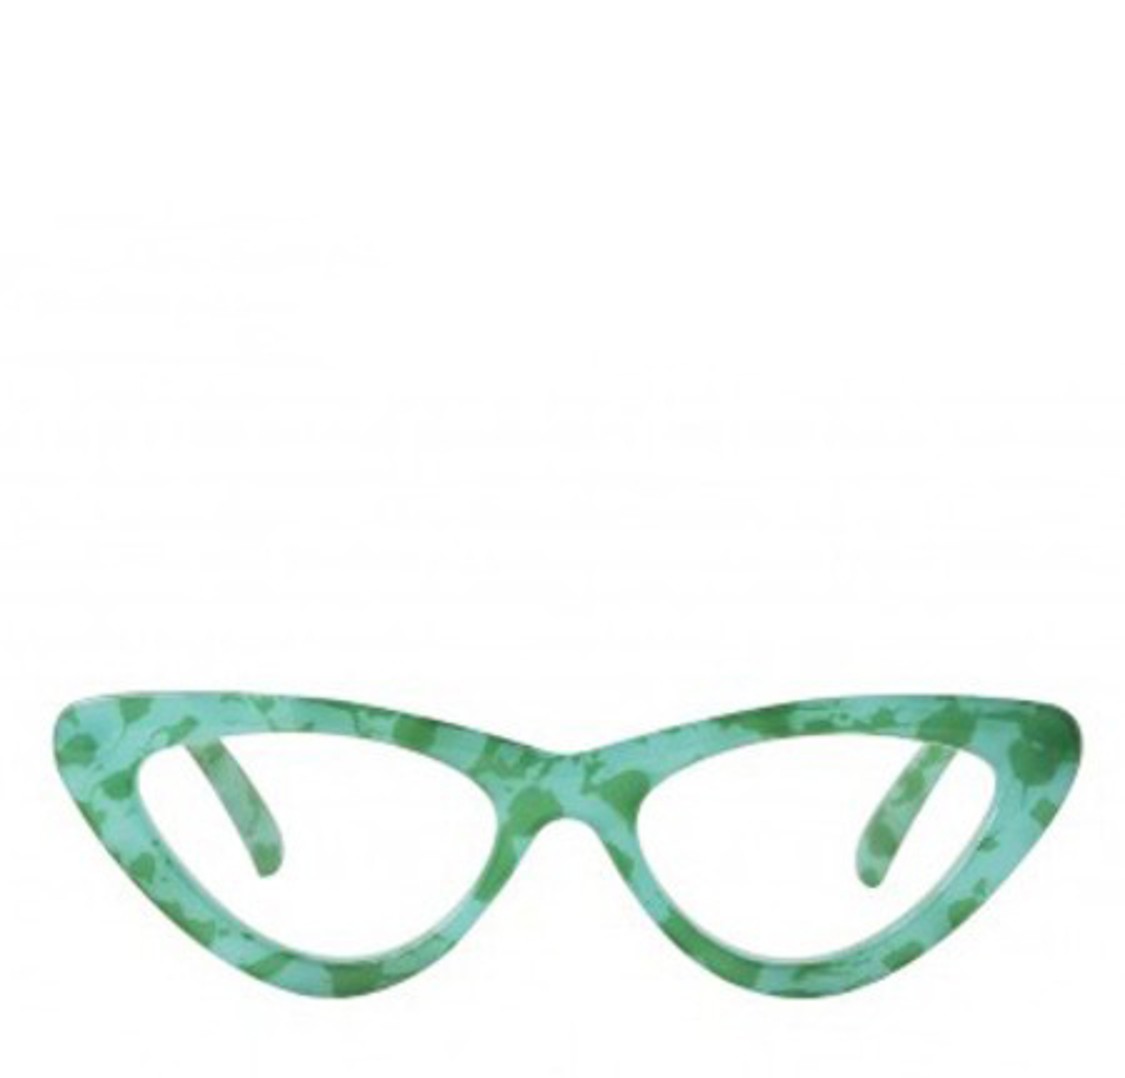 shop Thorberg  Occhiali: Occhiali Thorberg, occhiali da lettura, graduati, modello Maya.

Composizione: 100% plastica. number 1834